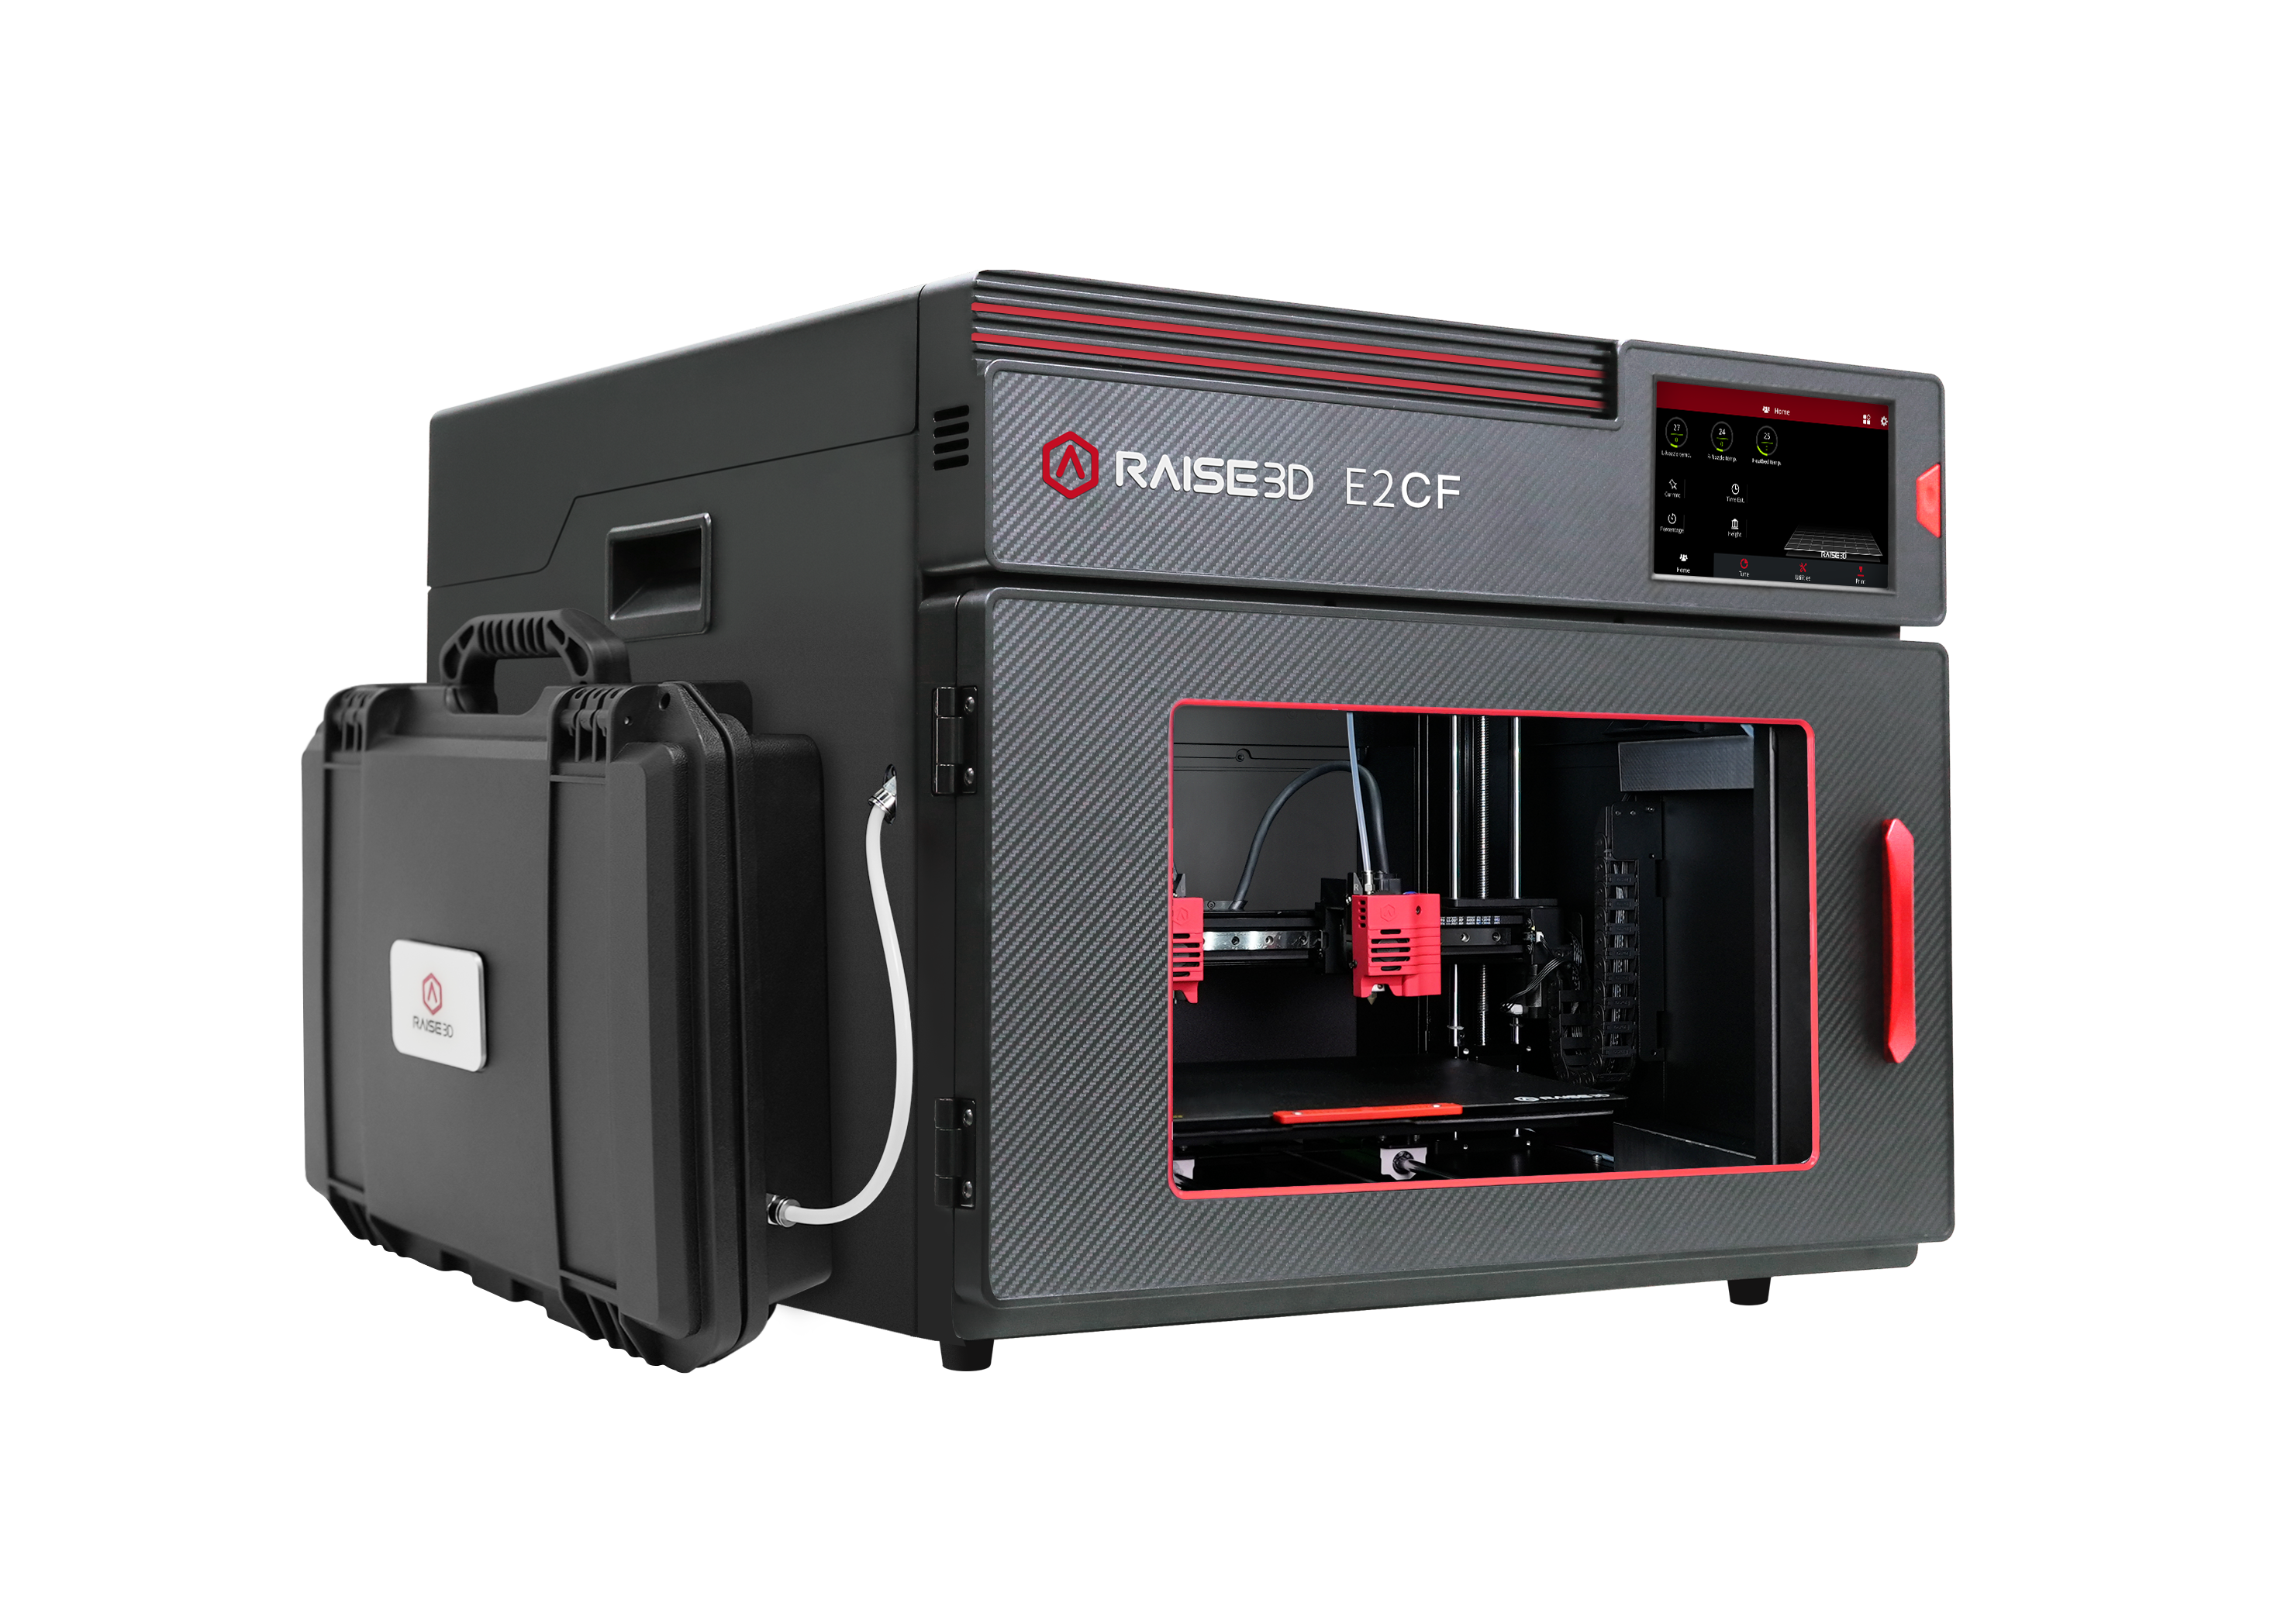 Entretien imprimante 3D FDM - Polyfab3D